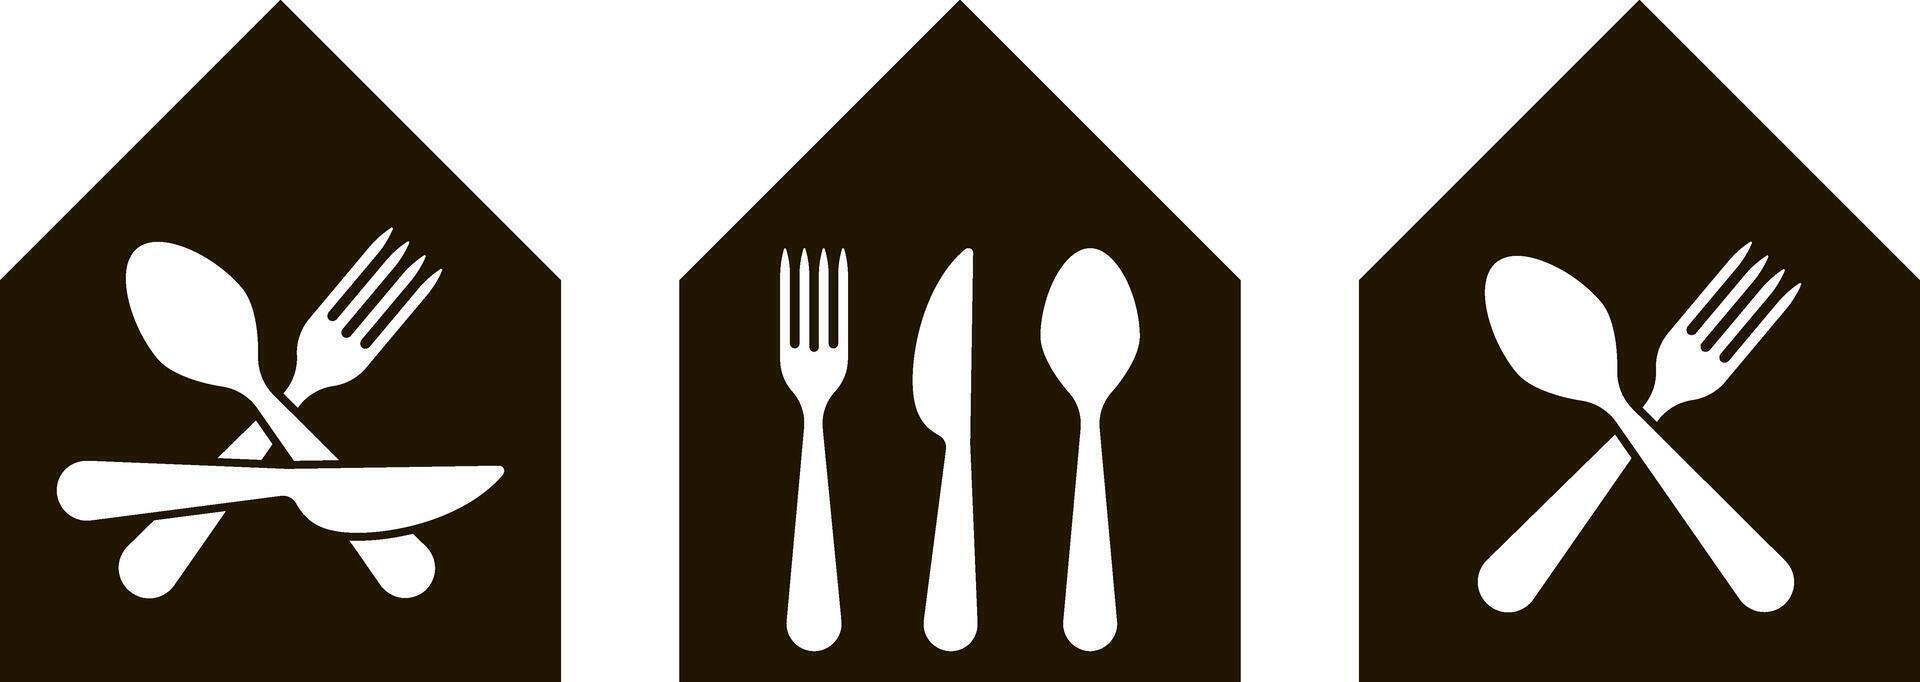 comida hause comida centrar Corte Servicio cantina o restaurante cuchara cuchillo tenedor vector icono